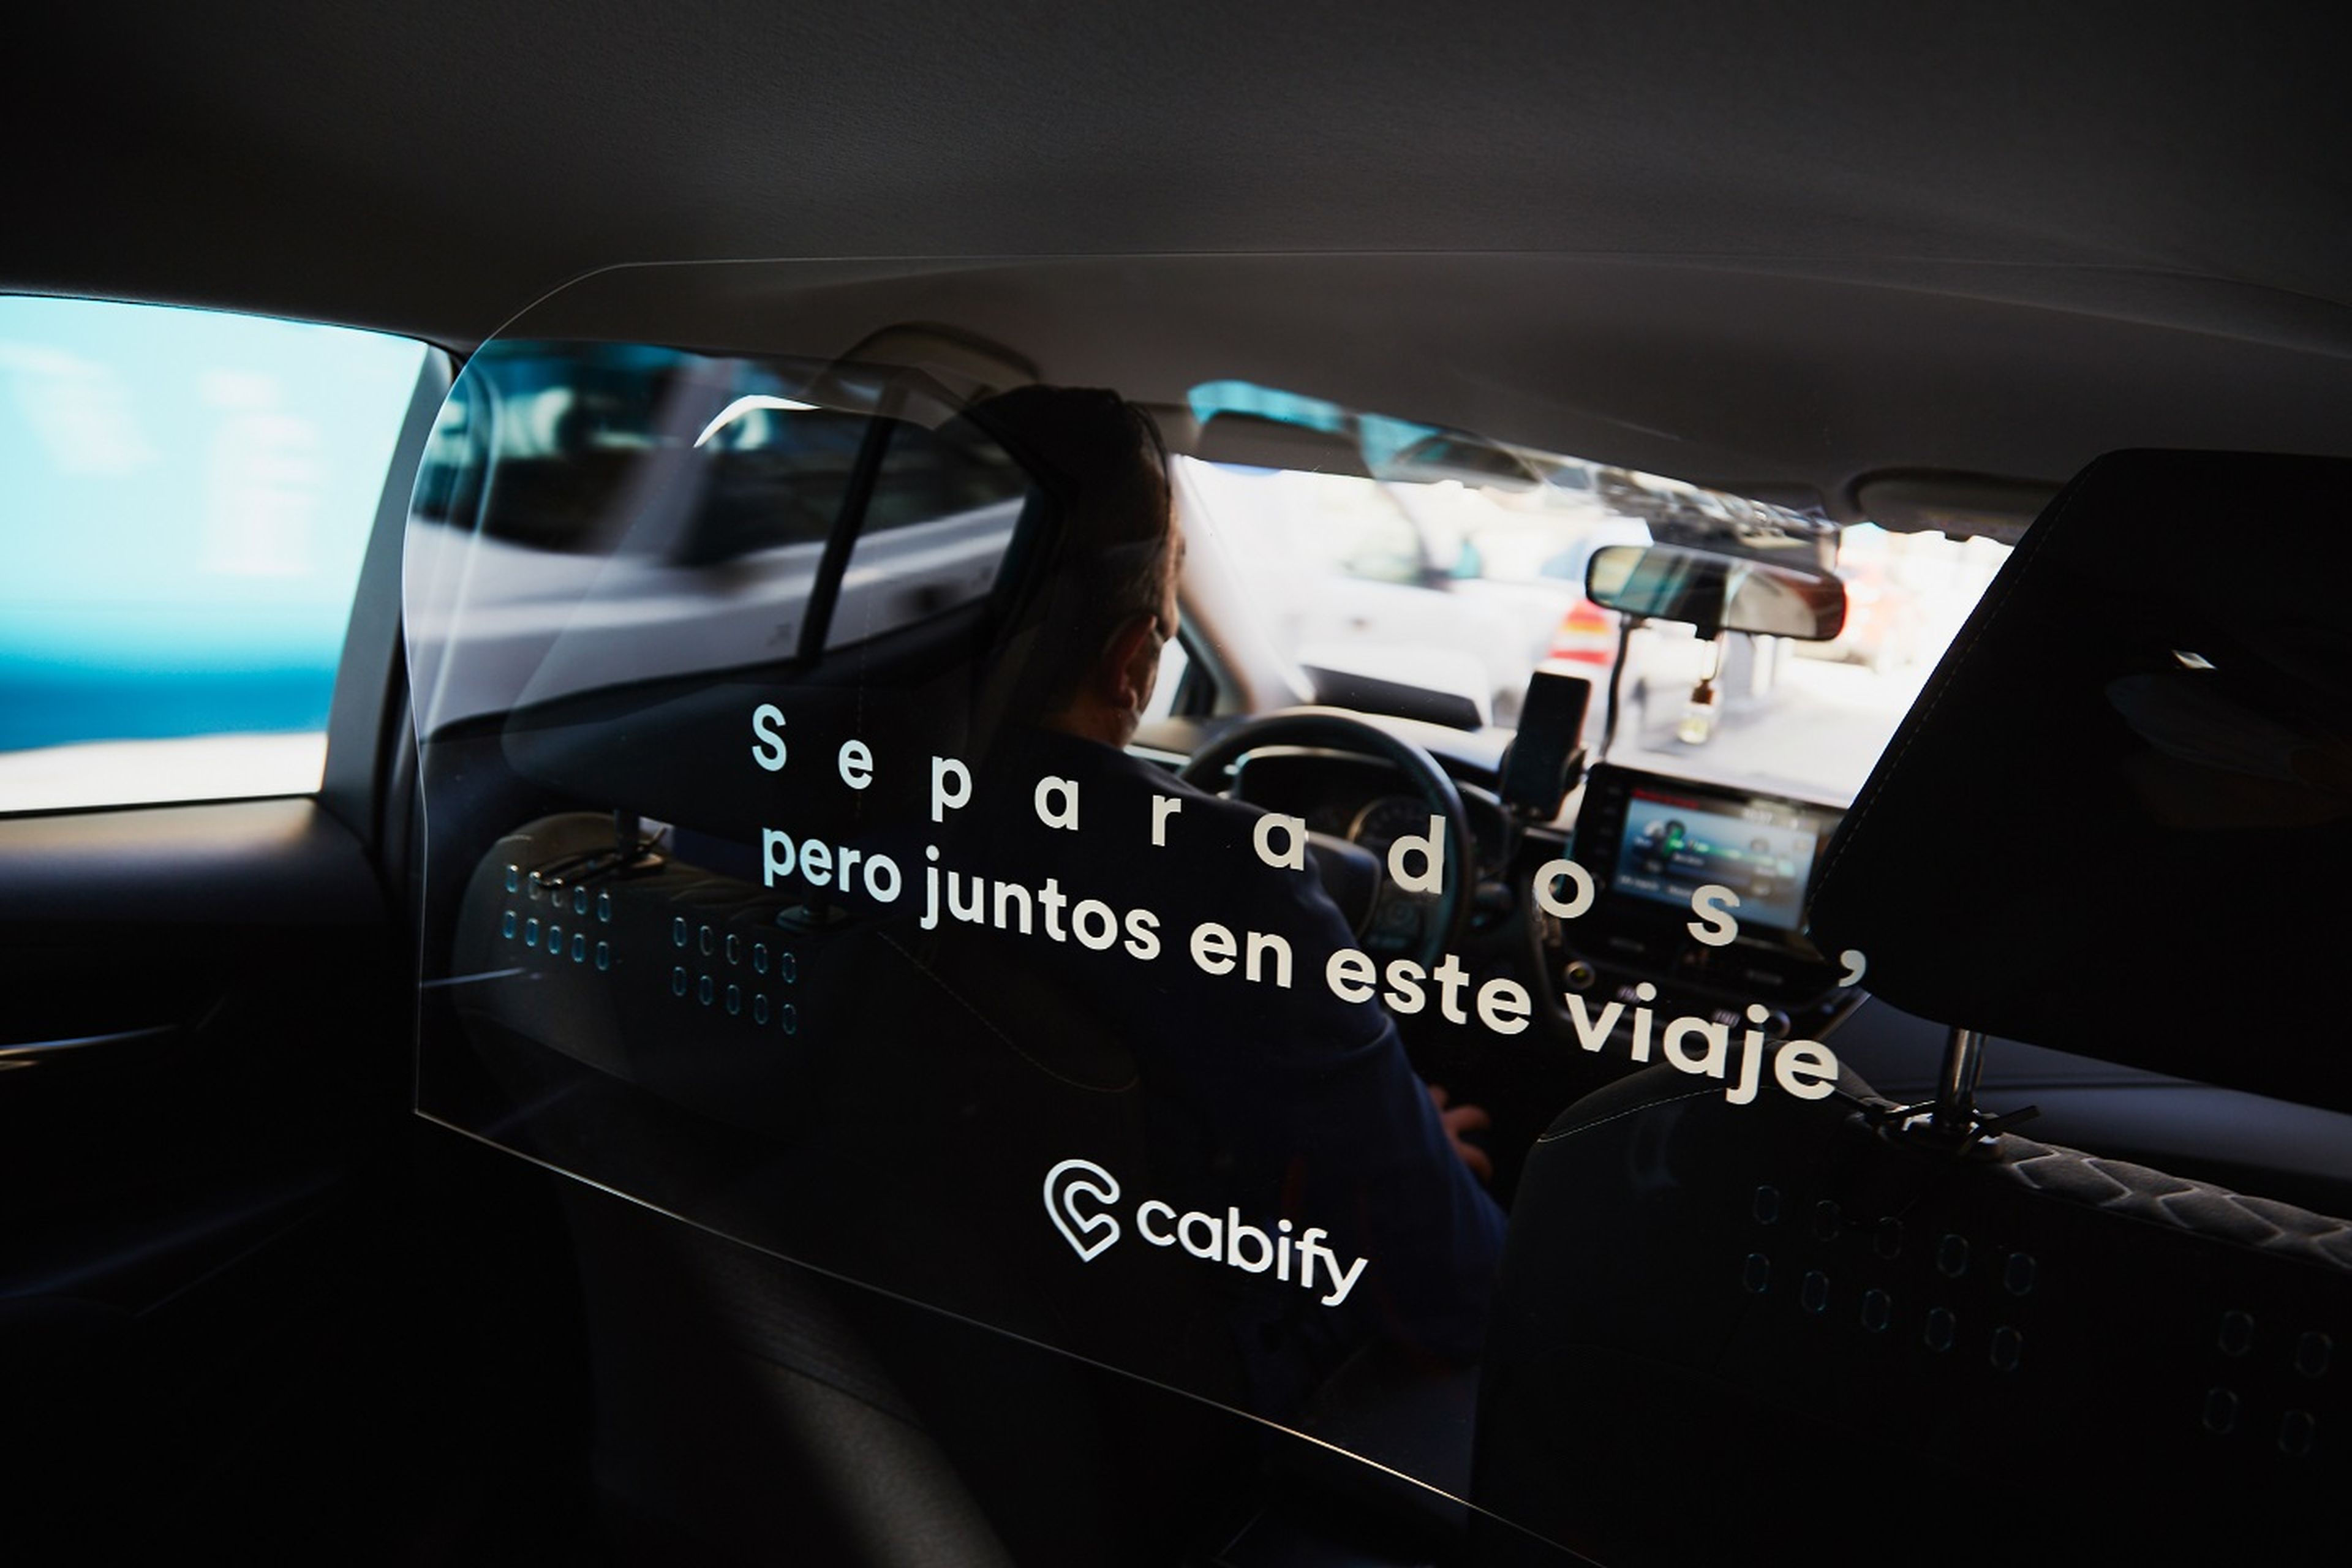 Mampara que separa al conductor de los pasajeros en una imagen promocional de Cabify.